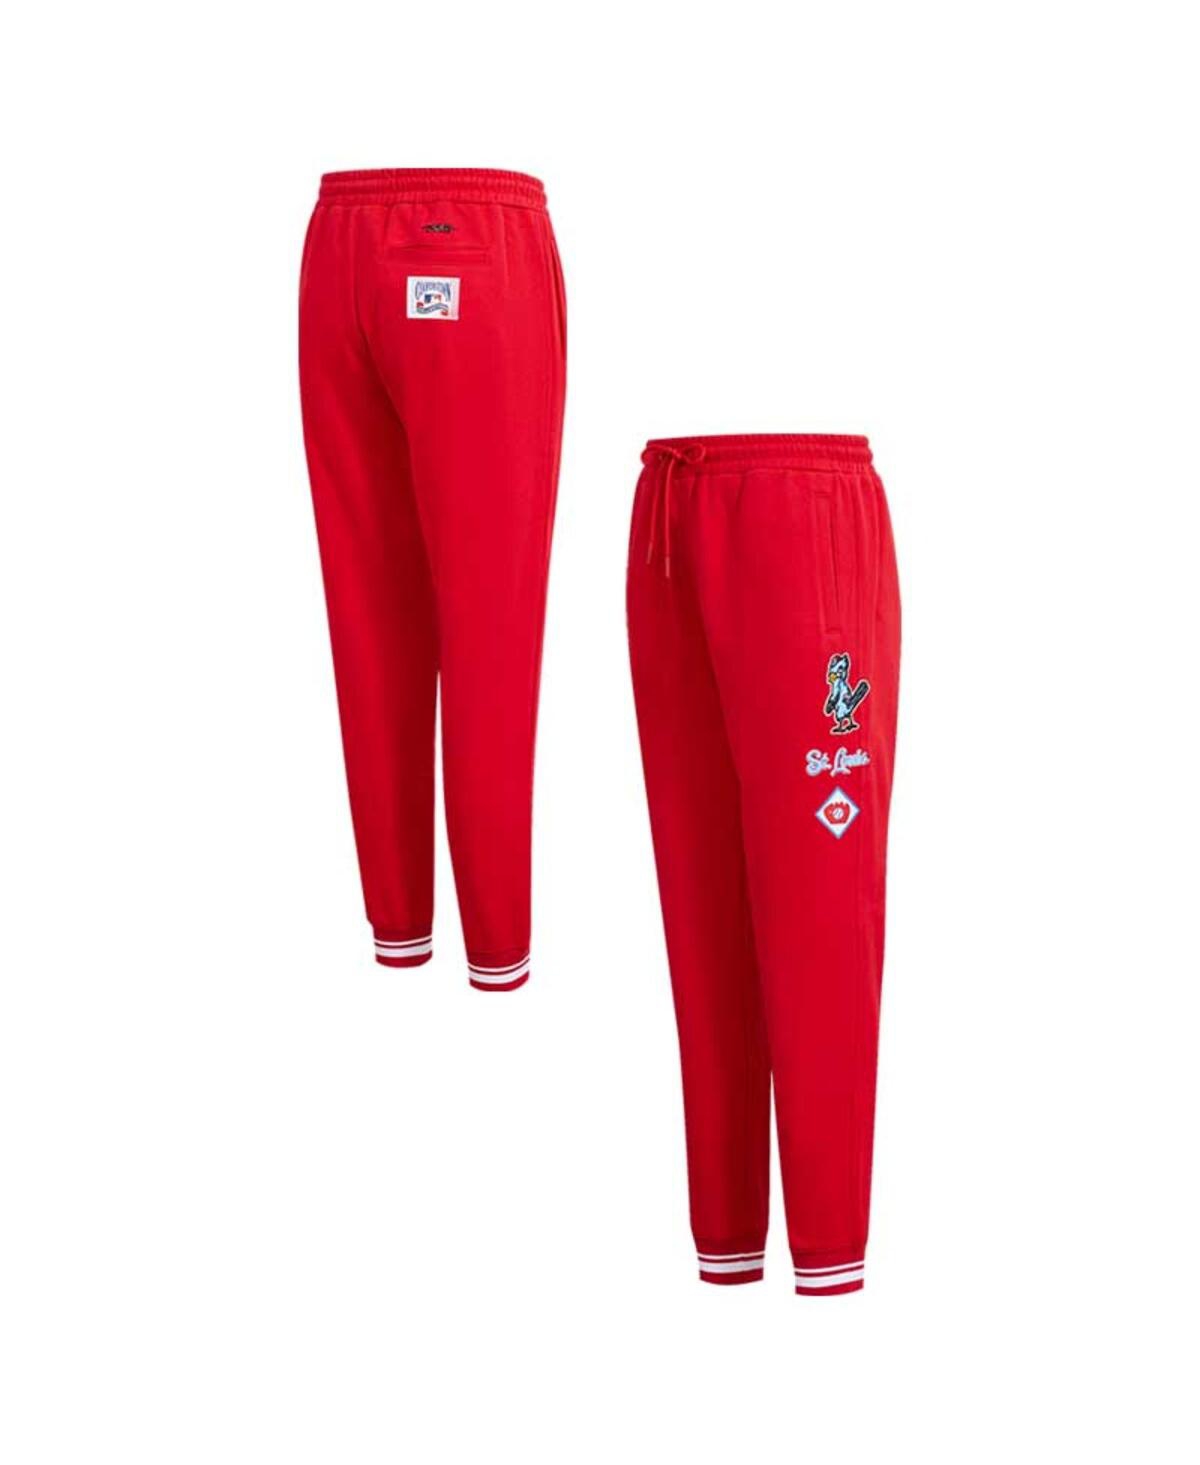 Shop Pro Standard Women's  Red St. Louis Cardinals Retro Classic Sweatpants